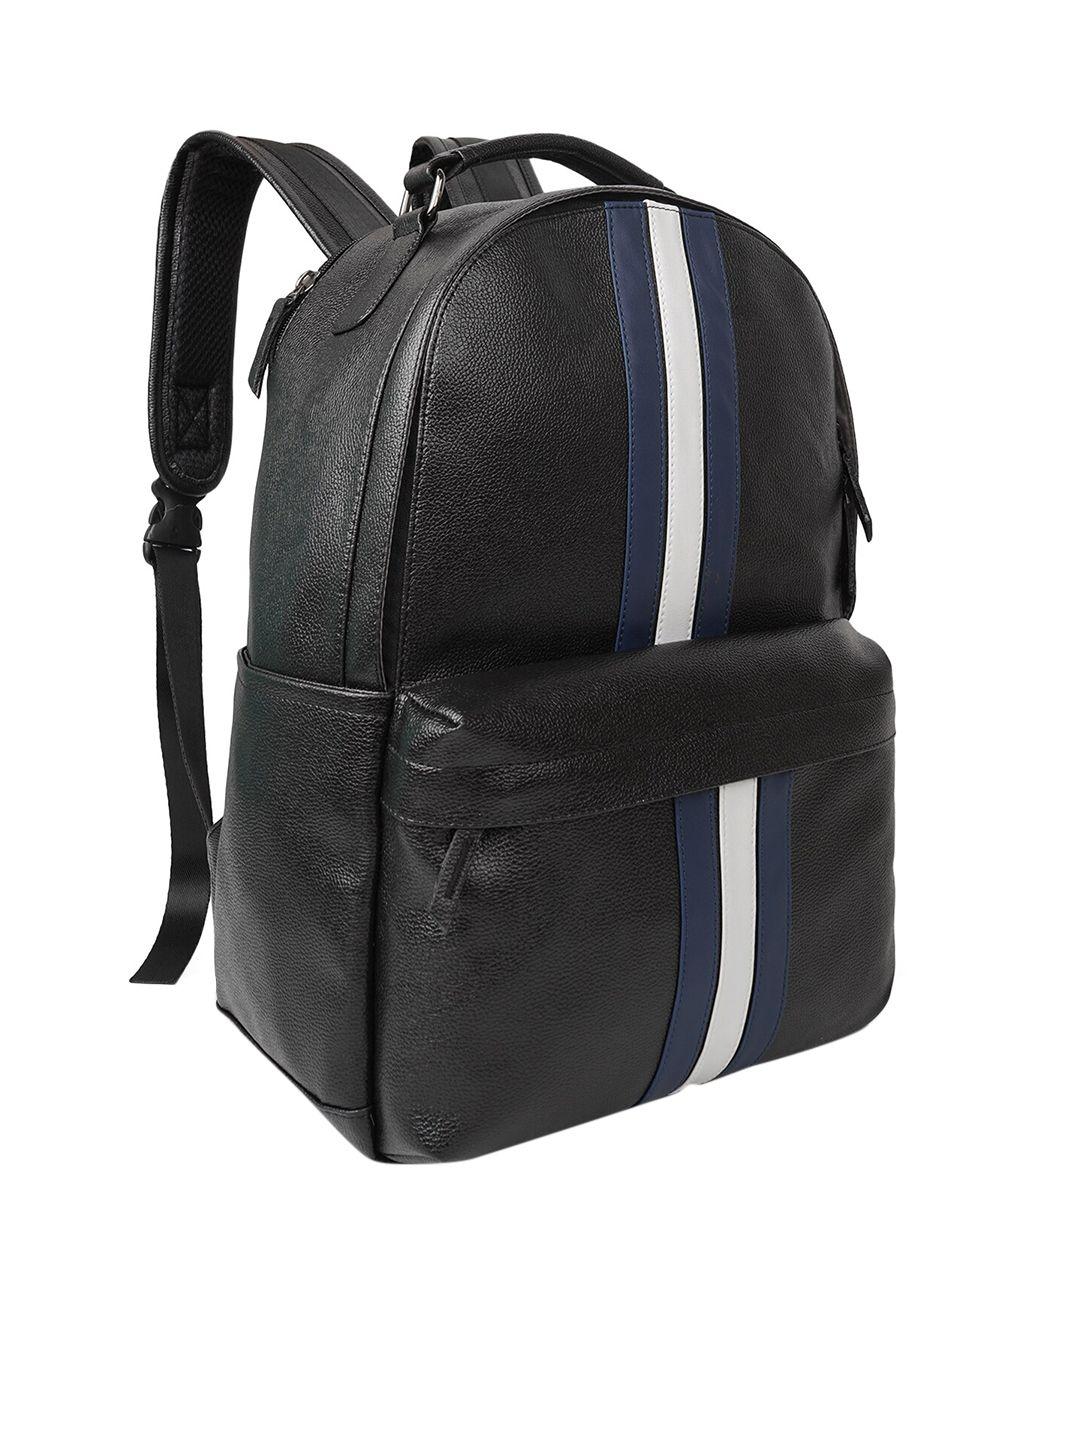 veneer striped vegan leather backpack